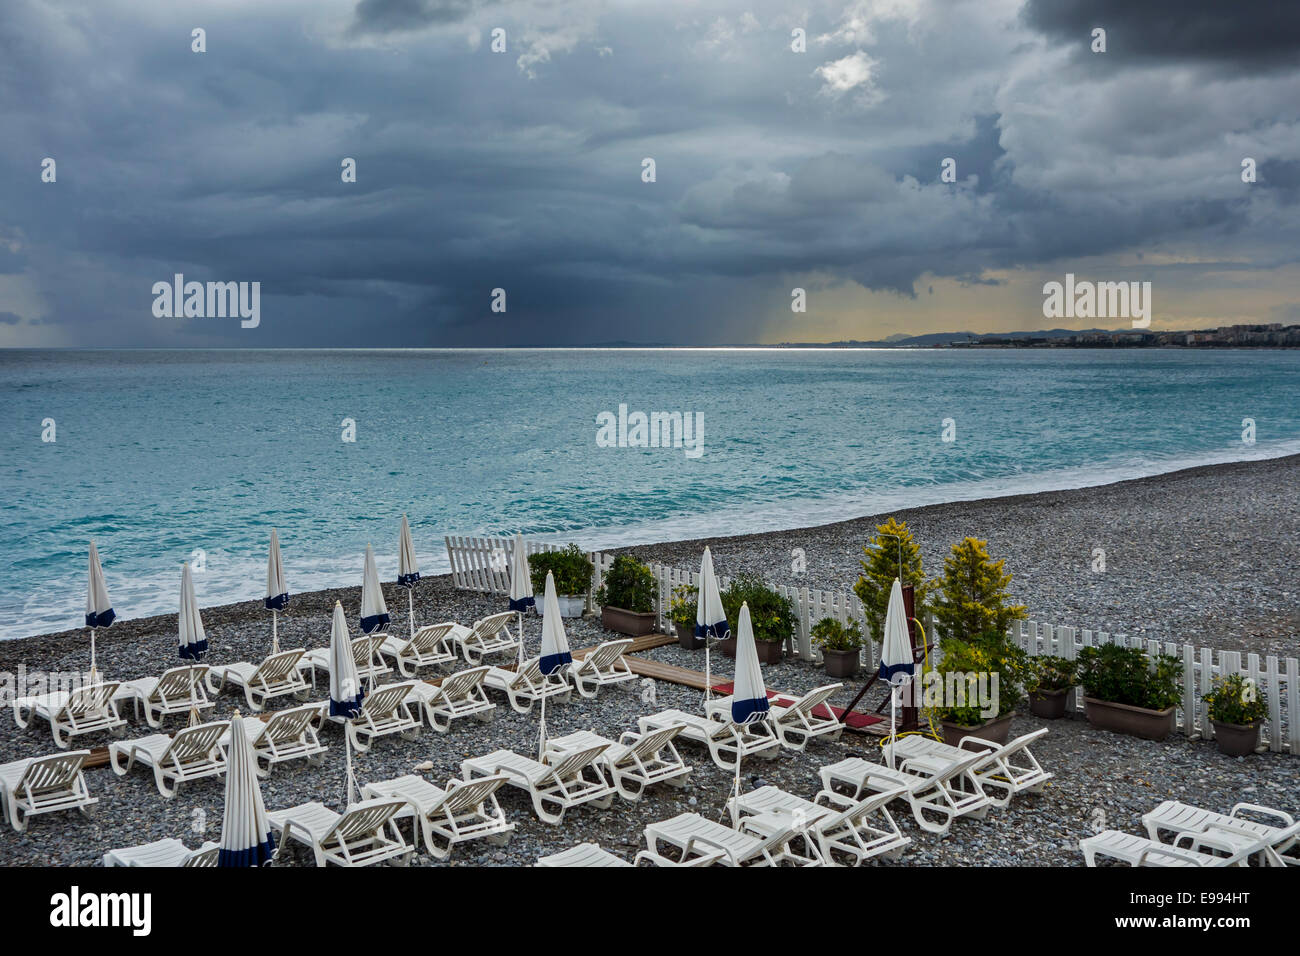 White sdraio sulla spiaggia deserta durante il maltempo con scuri, minacciano pioggia nuvole sul mare Foto Stock